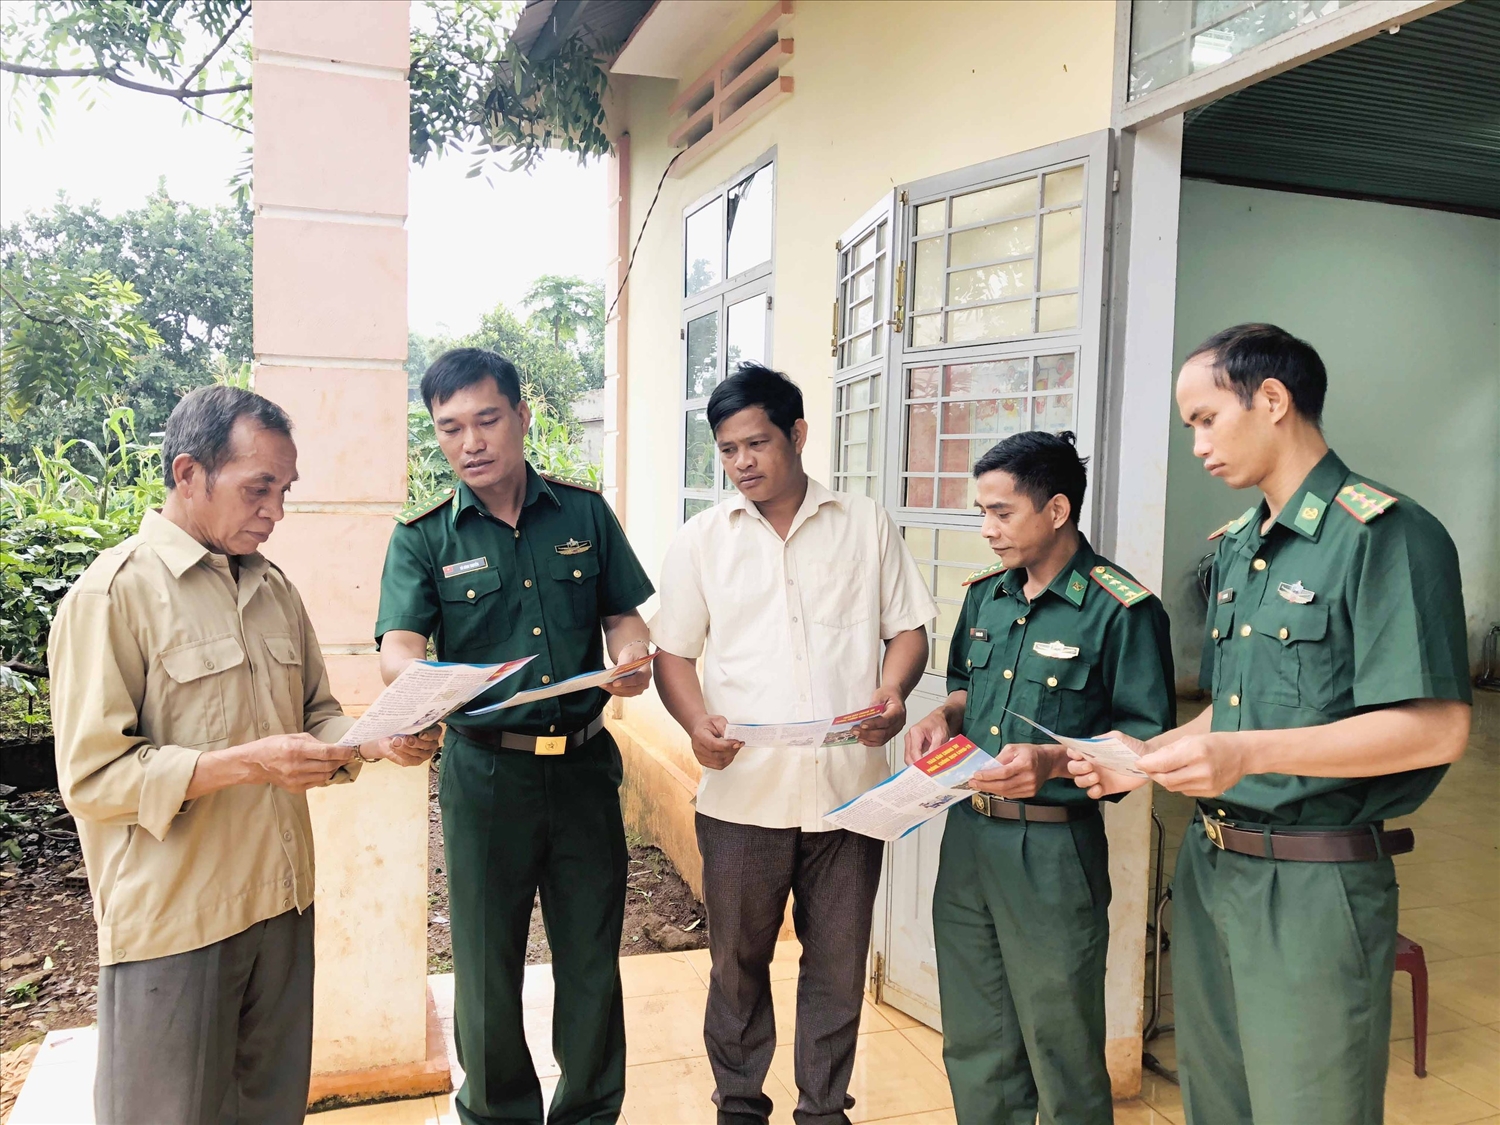 Bộ đội Biên phòng tỉnh Gia Lai đến nhà dân khu vực biên giới để tuyên truyền